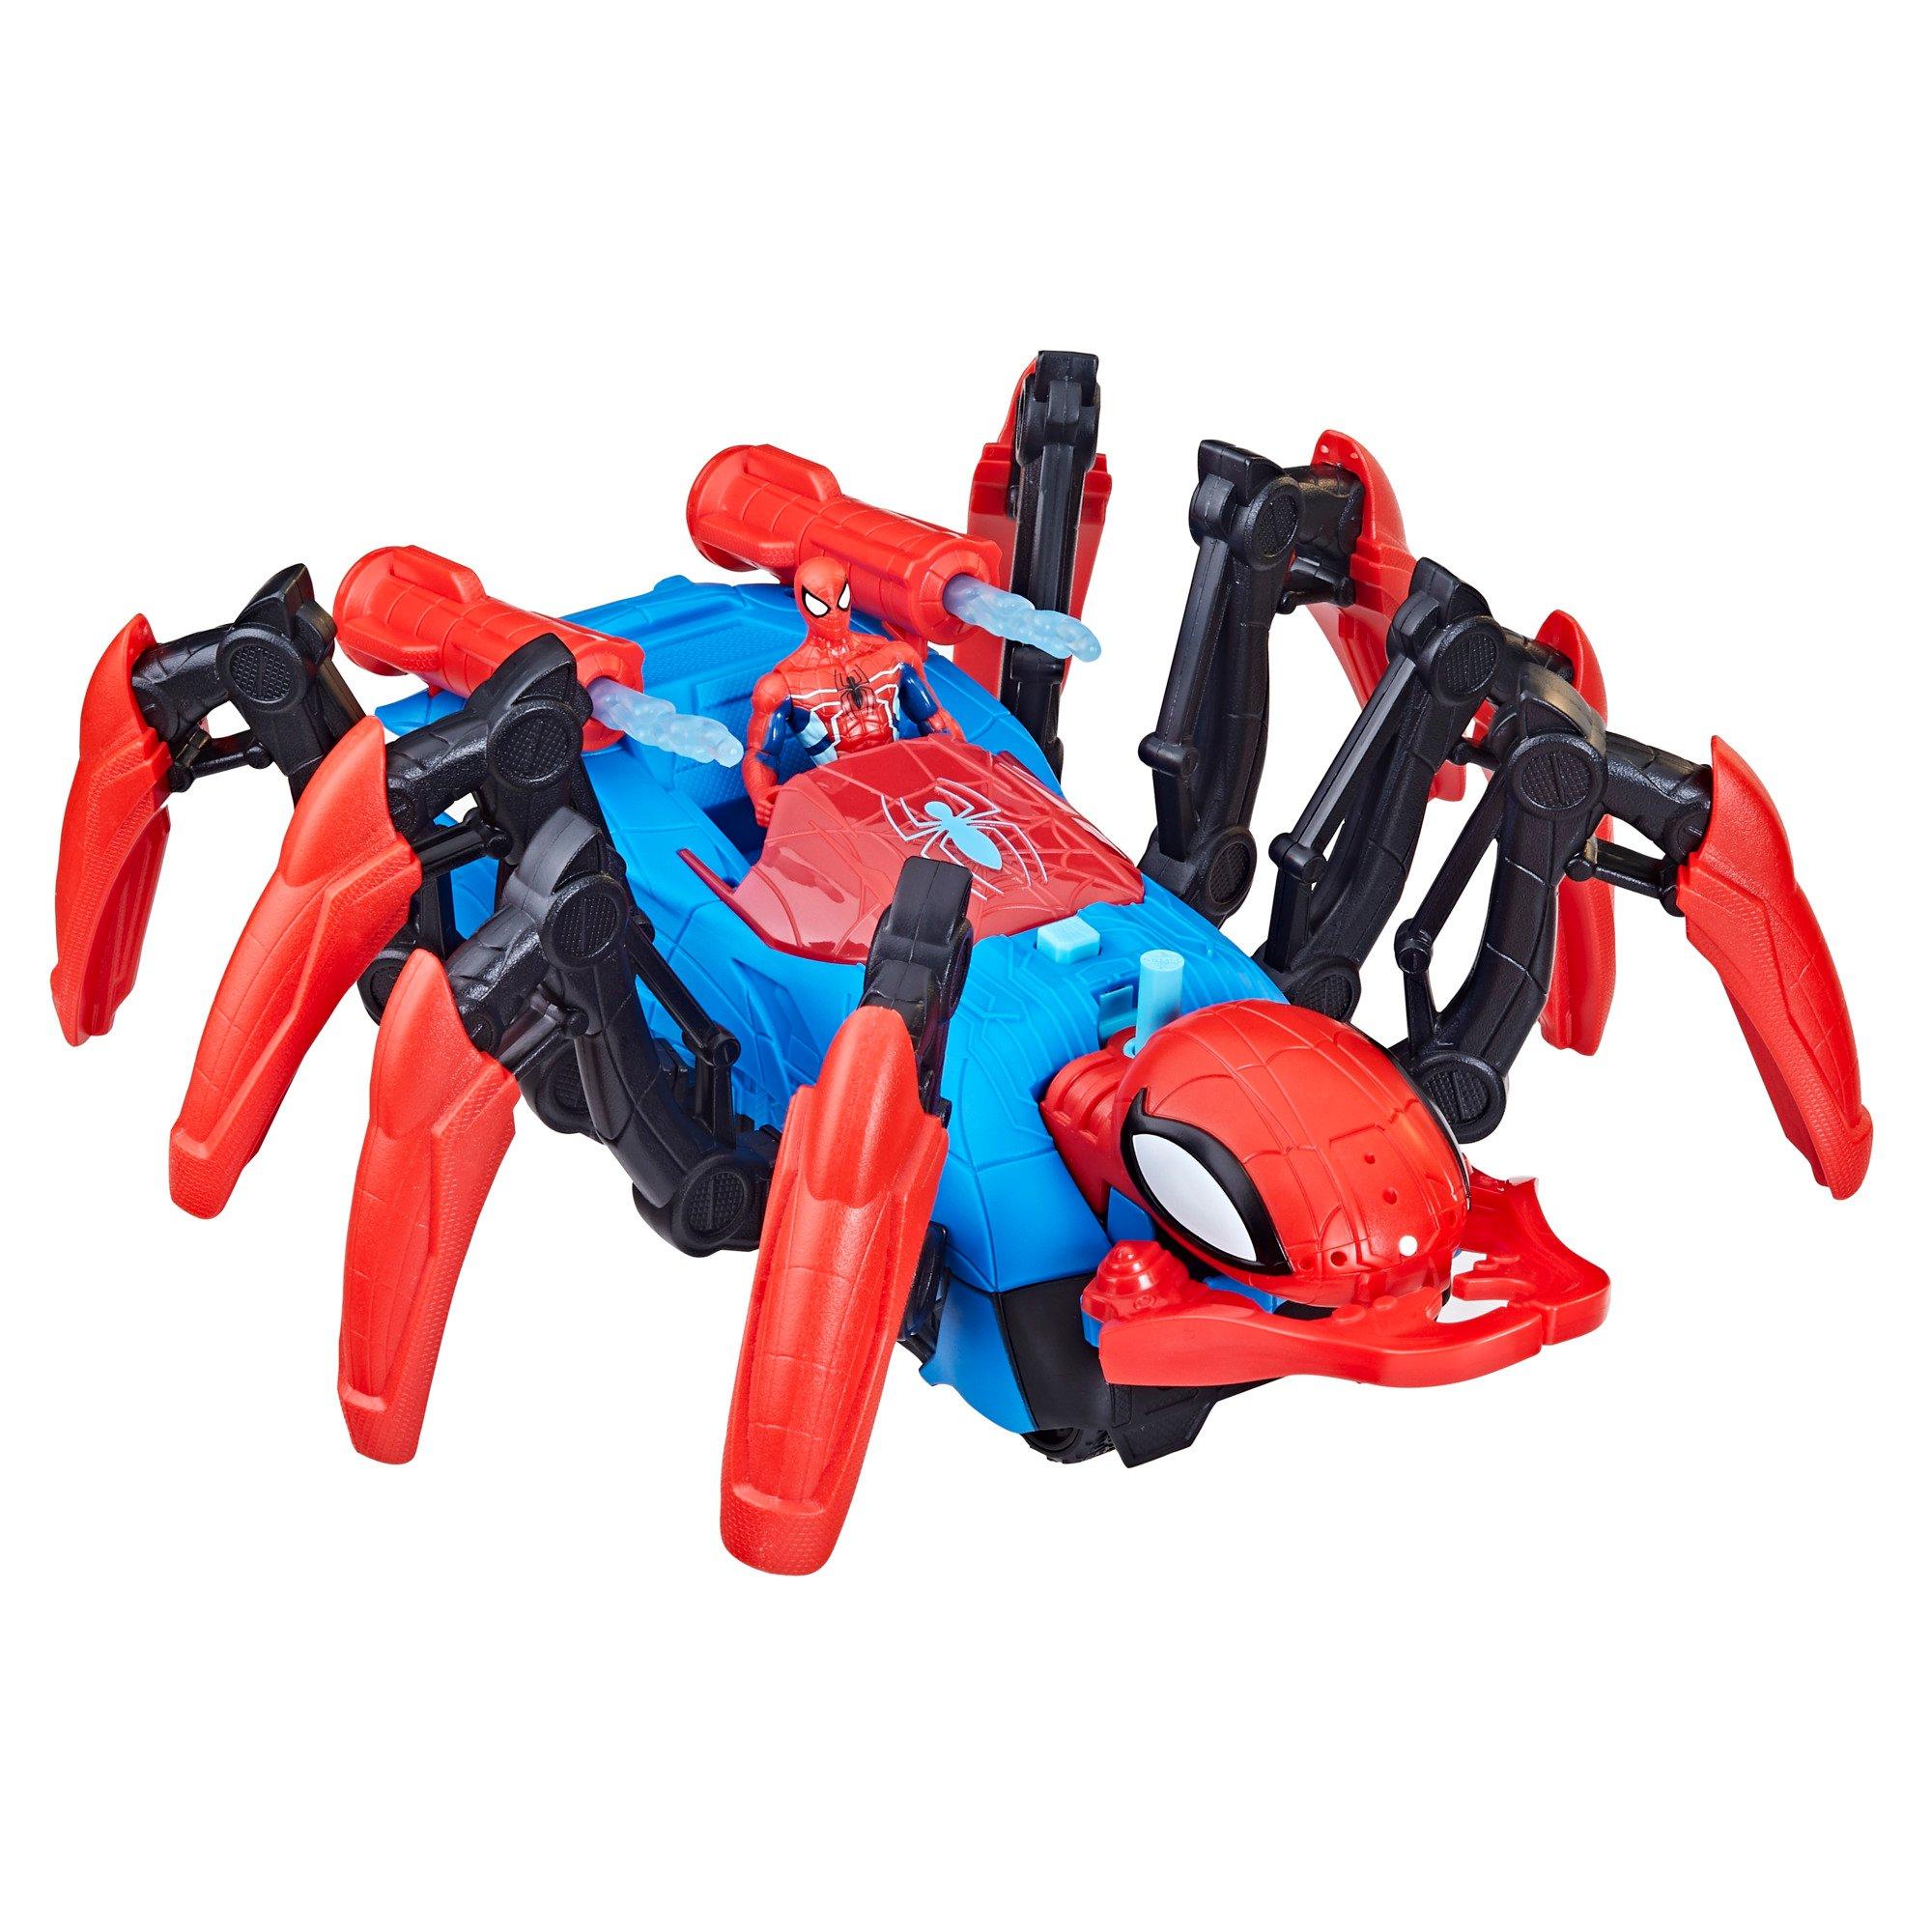 Marvel Spider-Man Jet araignée - Marvel